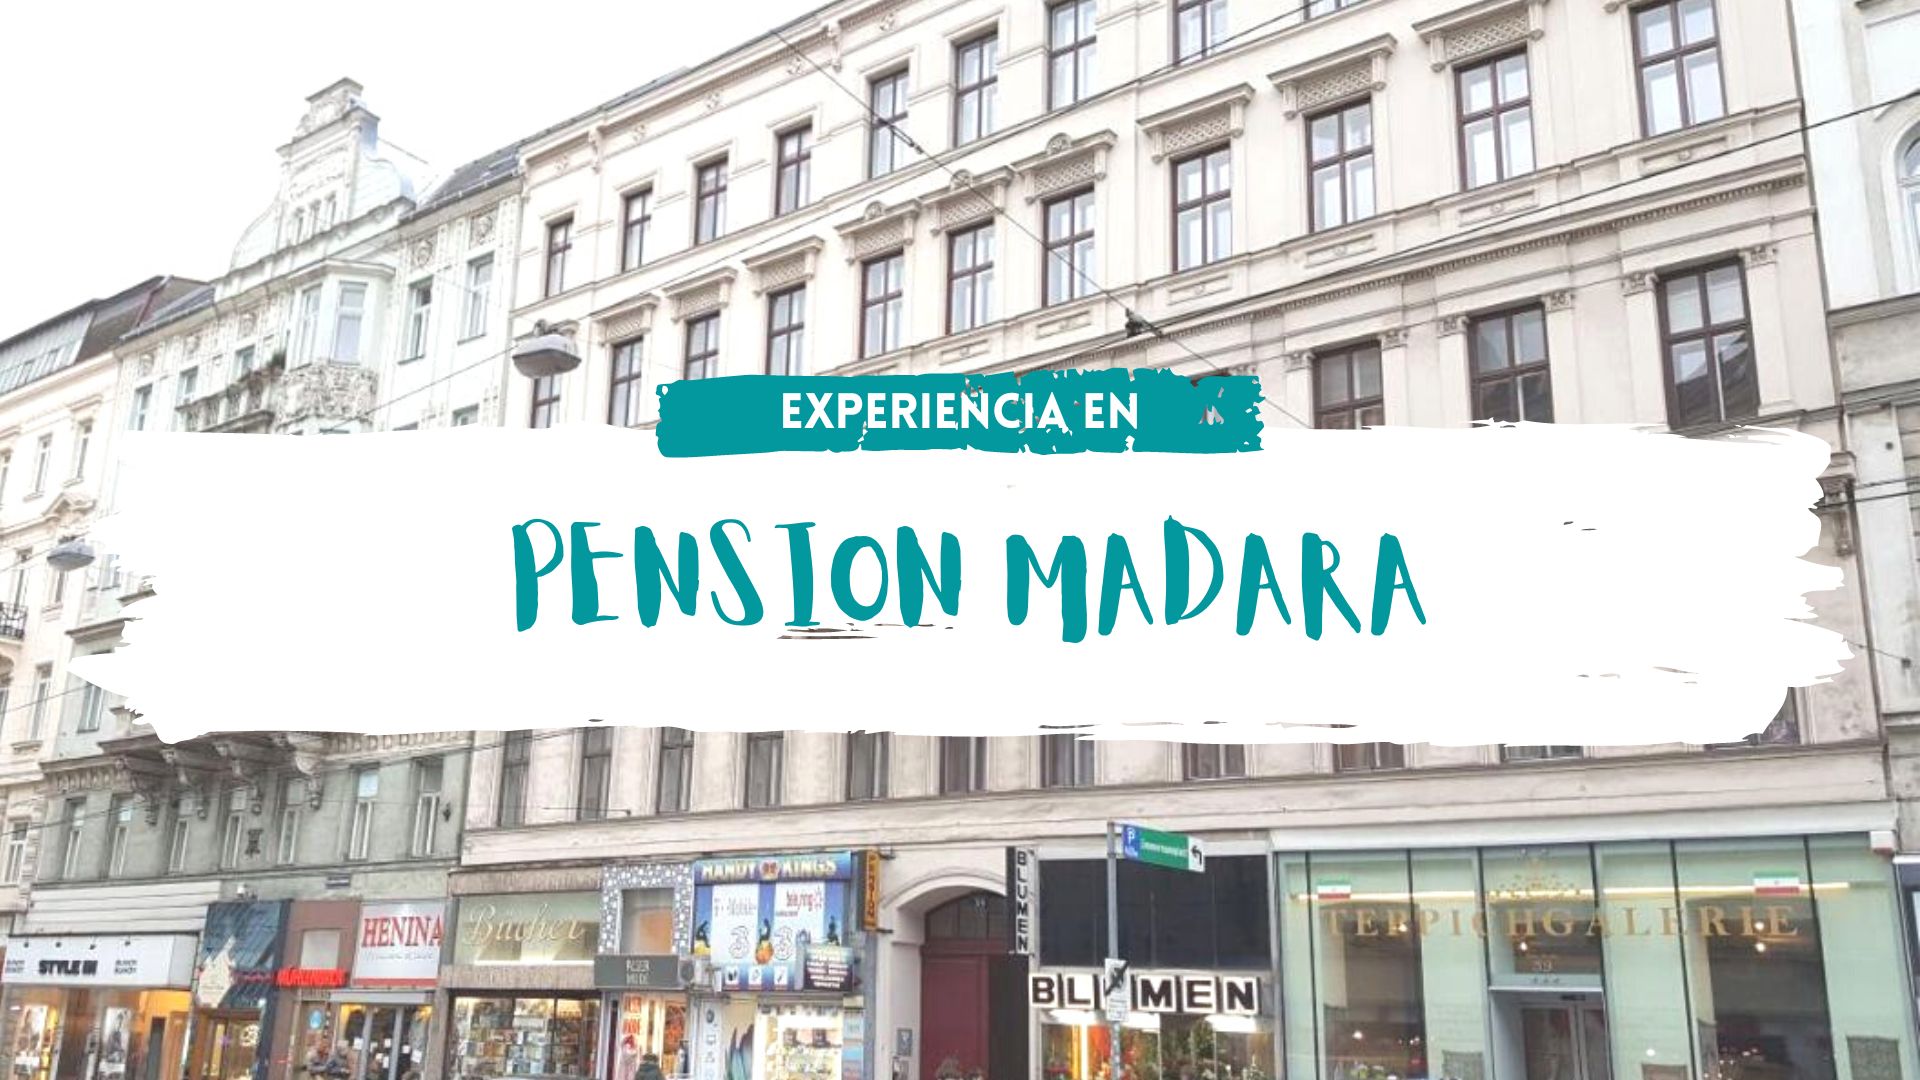 Pensión Madara Viena | Experiencia personal